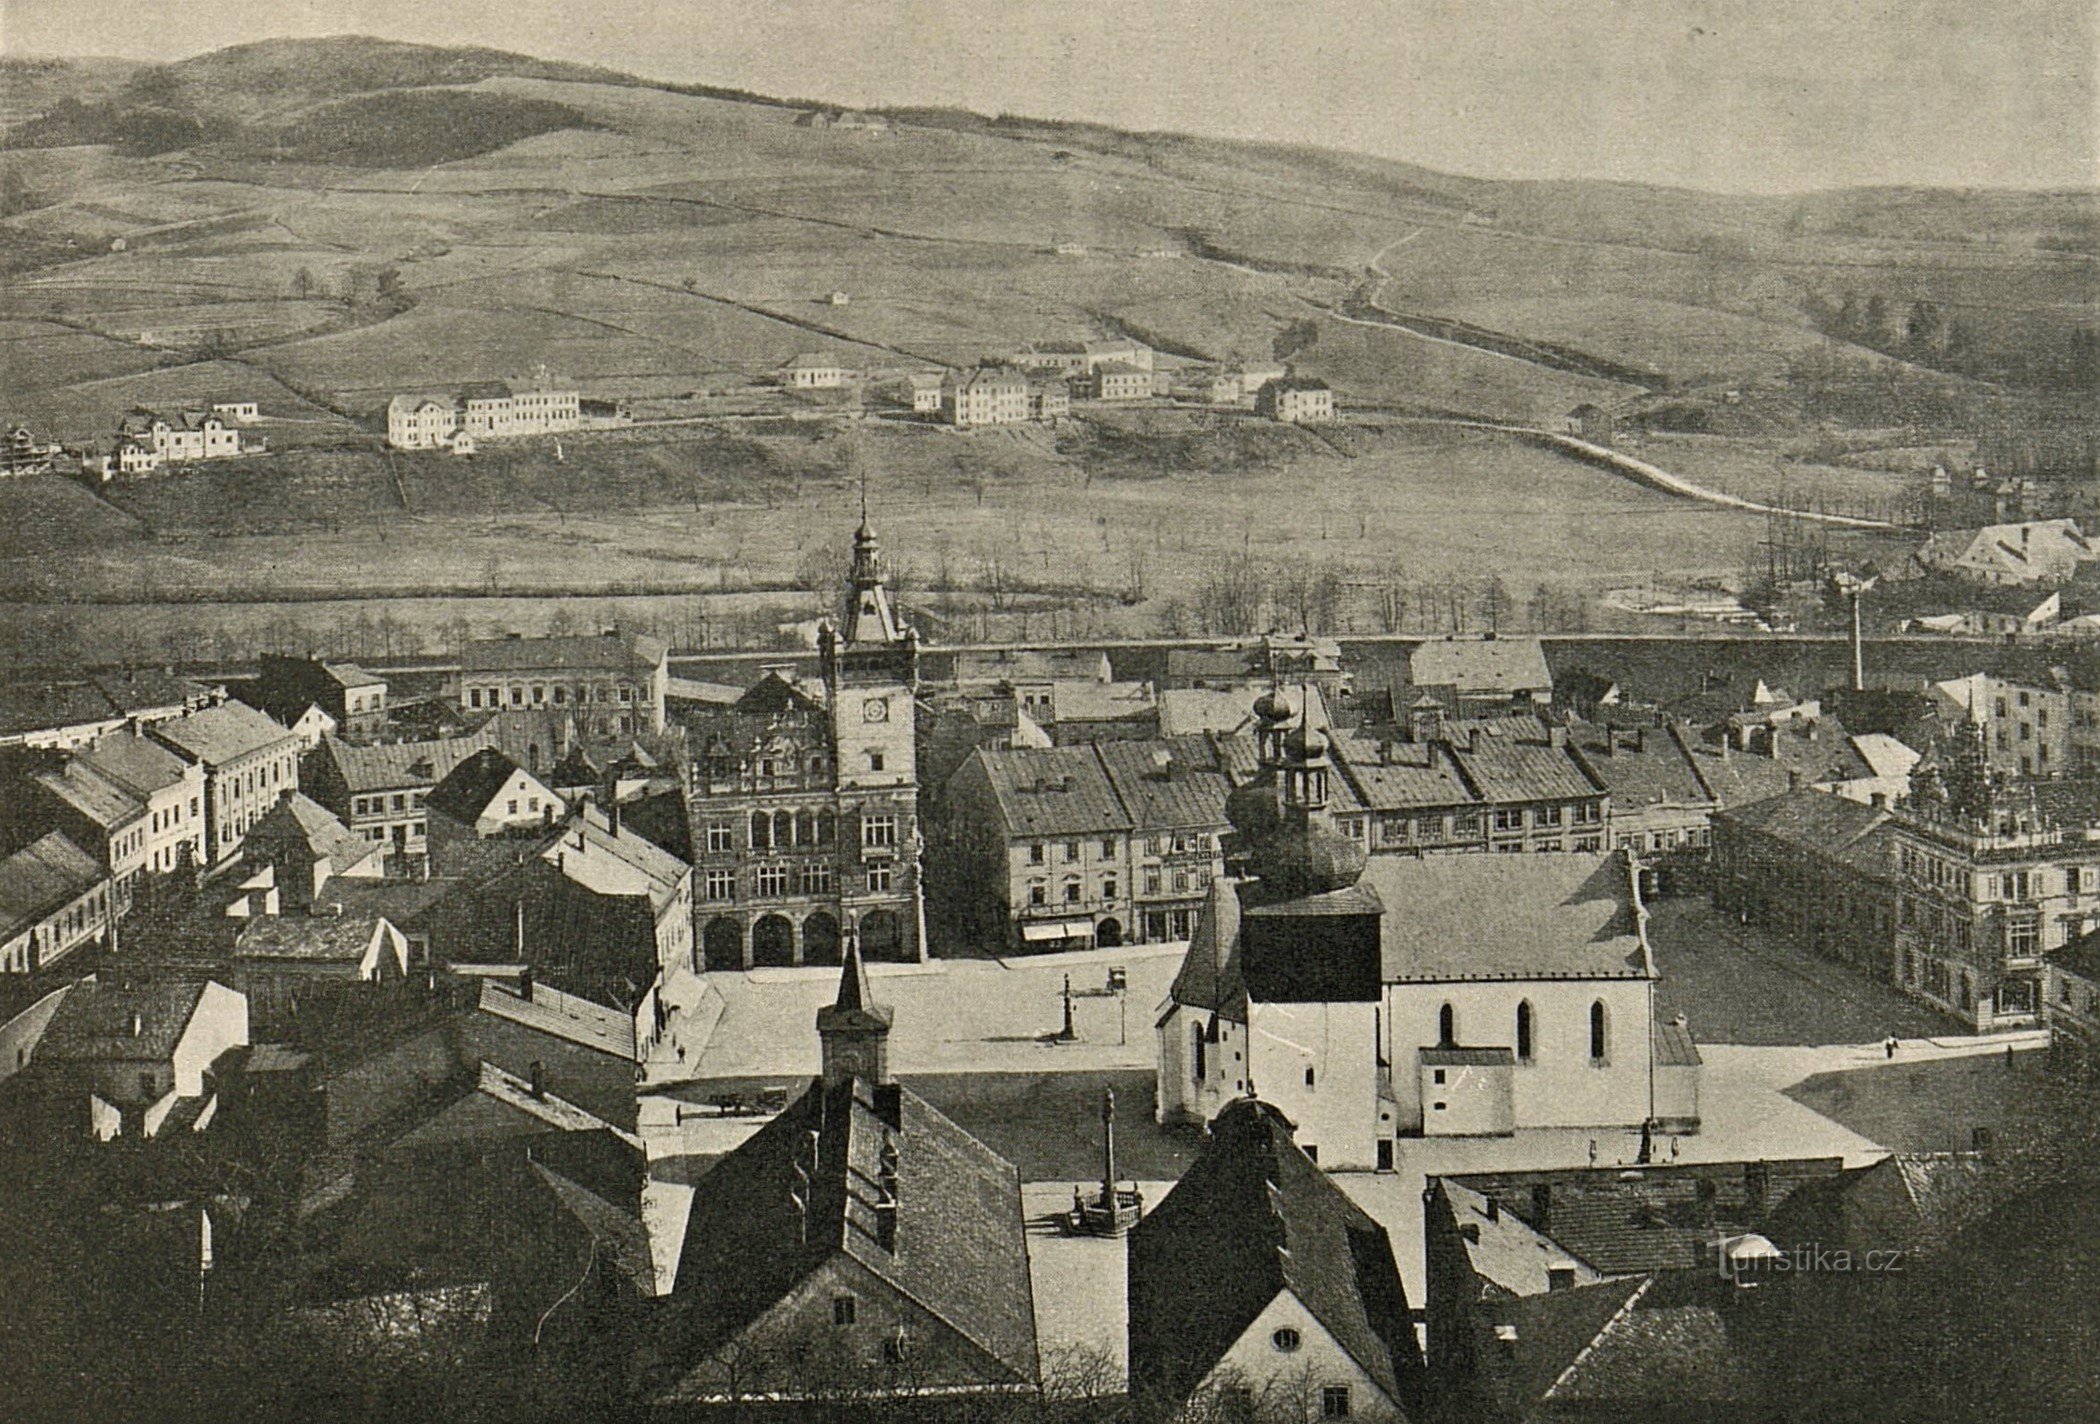 Náchod látképe a várból a 20. század elejéről (valószínűleg 1902-1904 között)